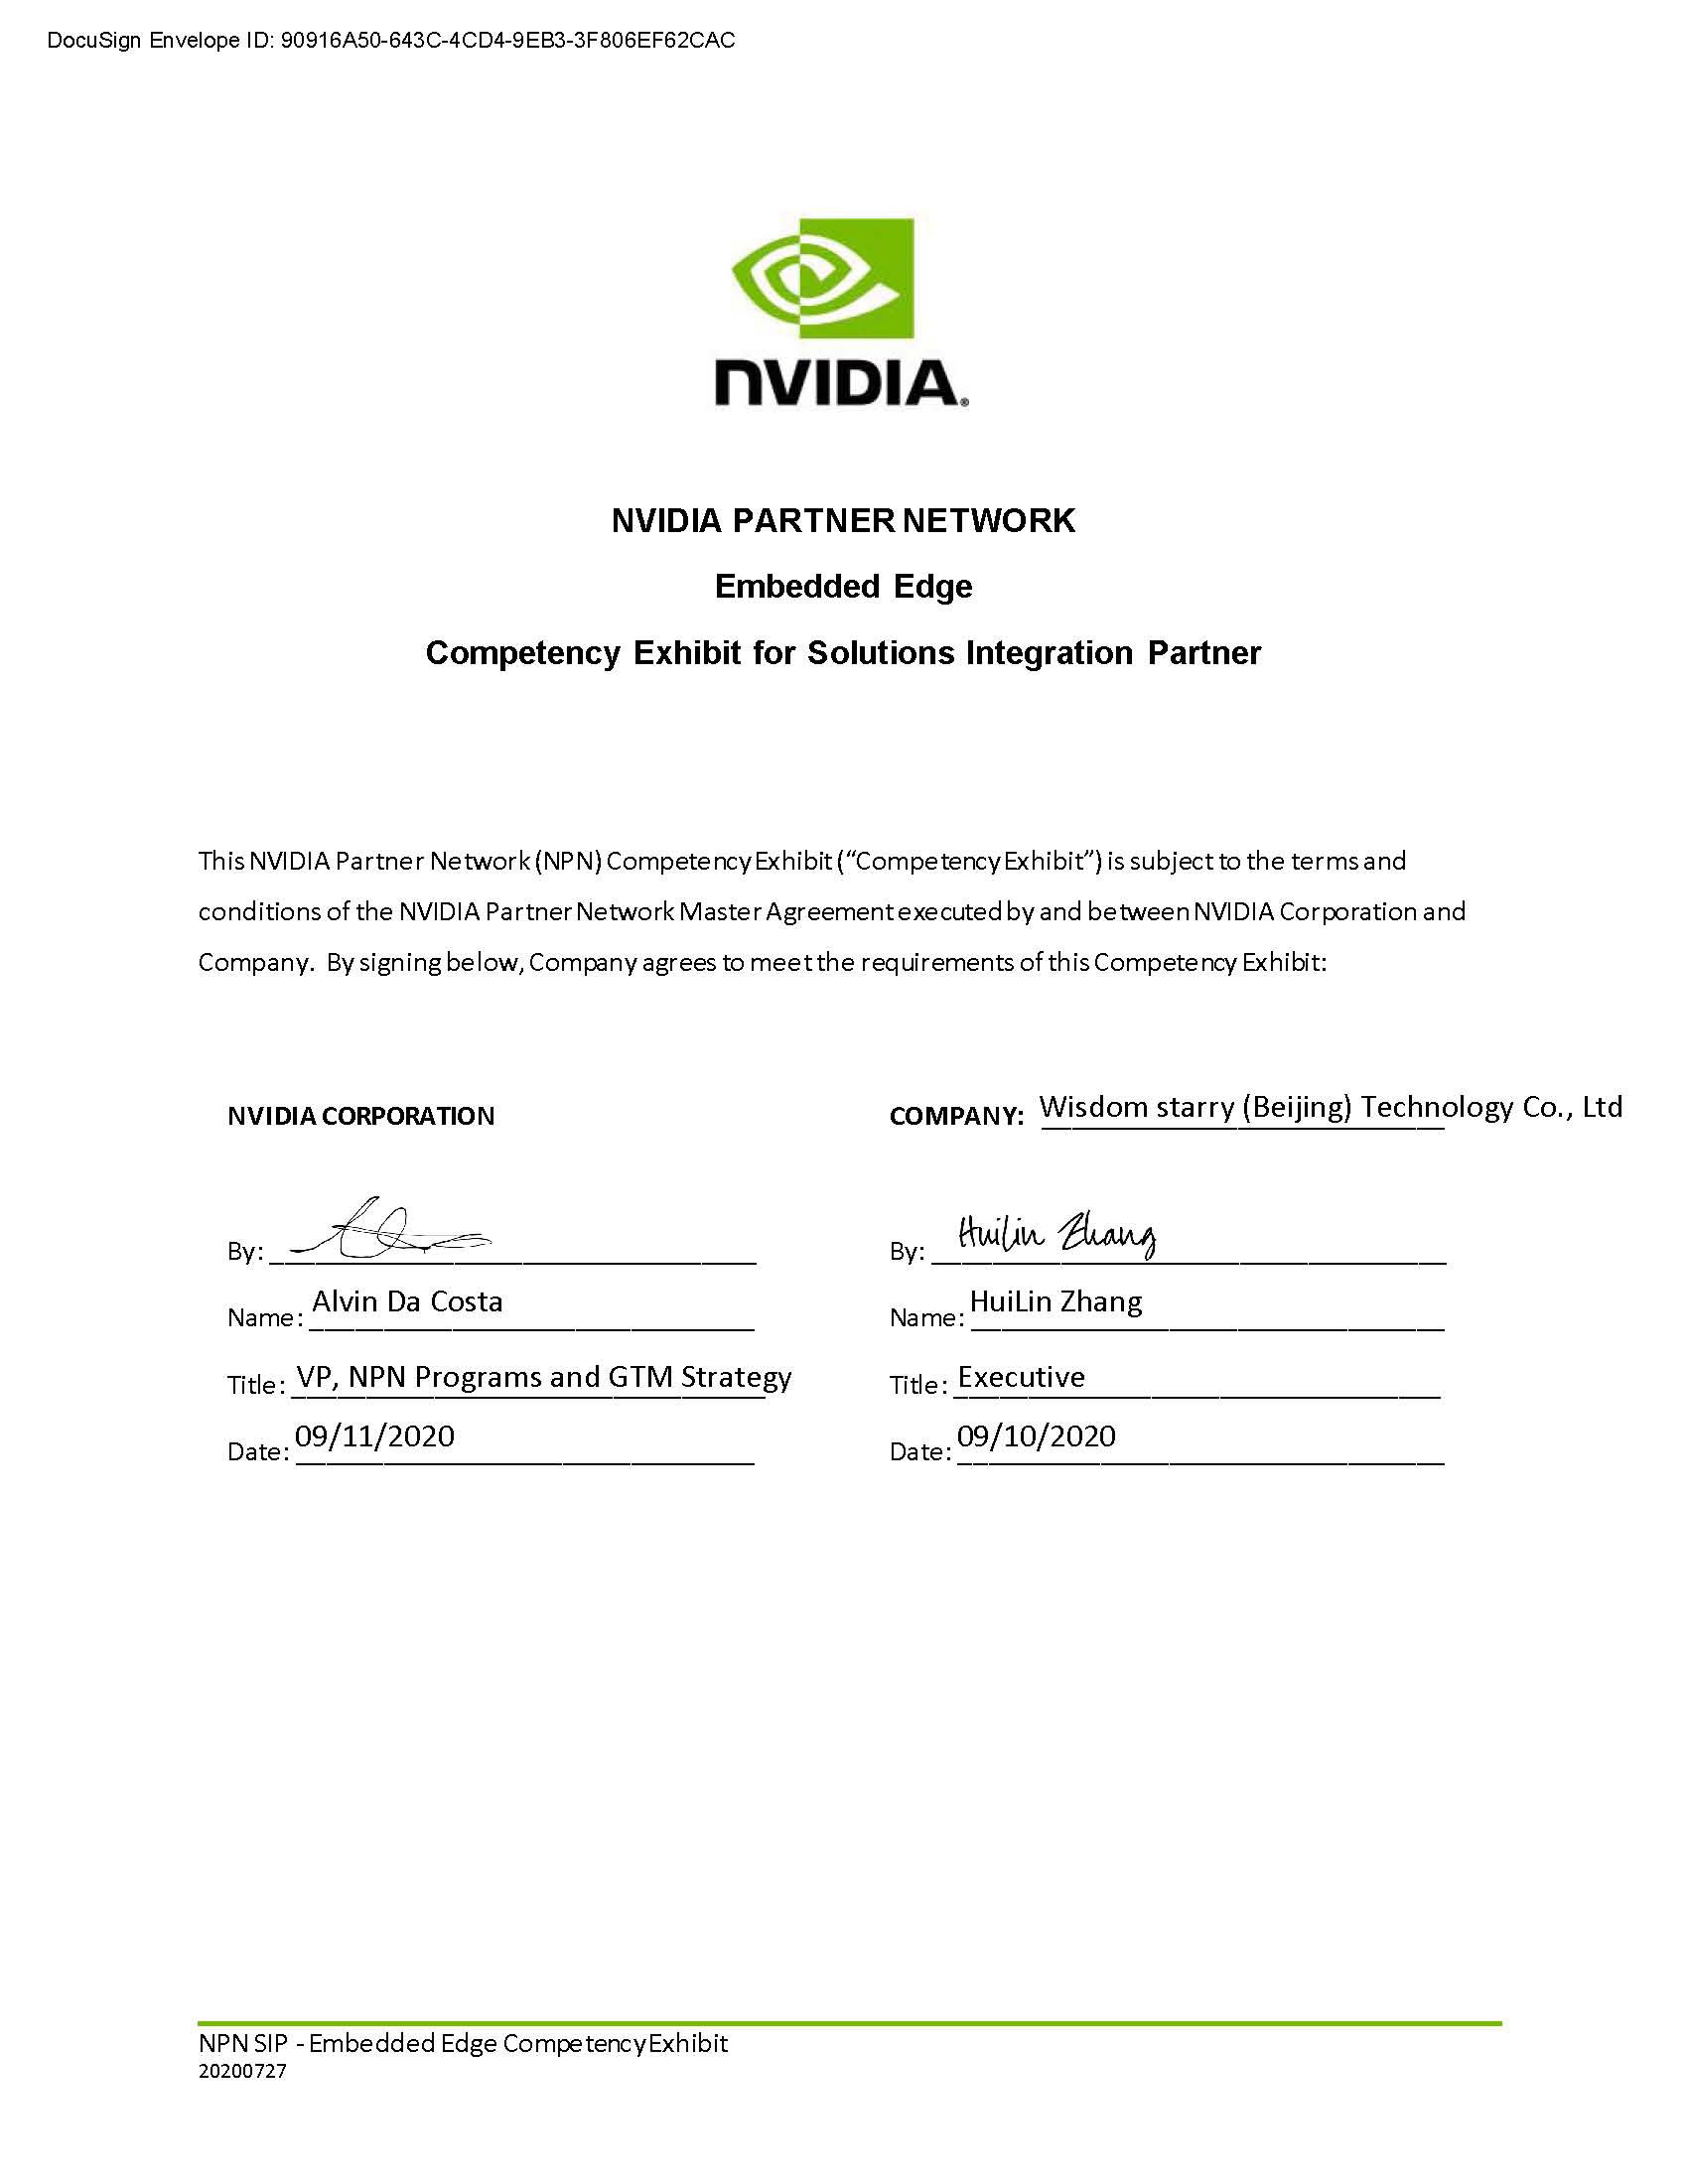 页面提取自－NVIDIA_Partner_Network_Contracts_Packet_for_R(1).jpg